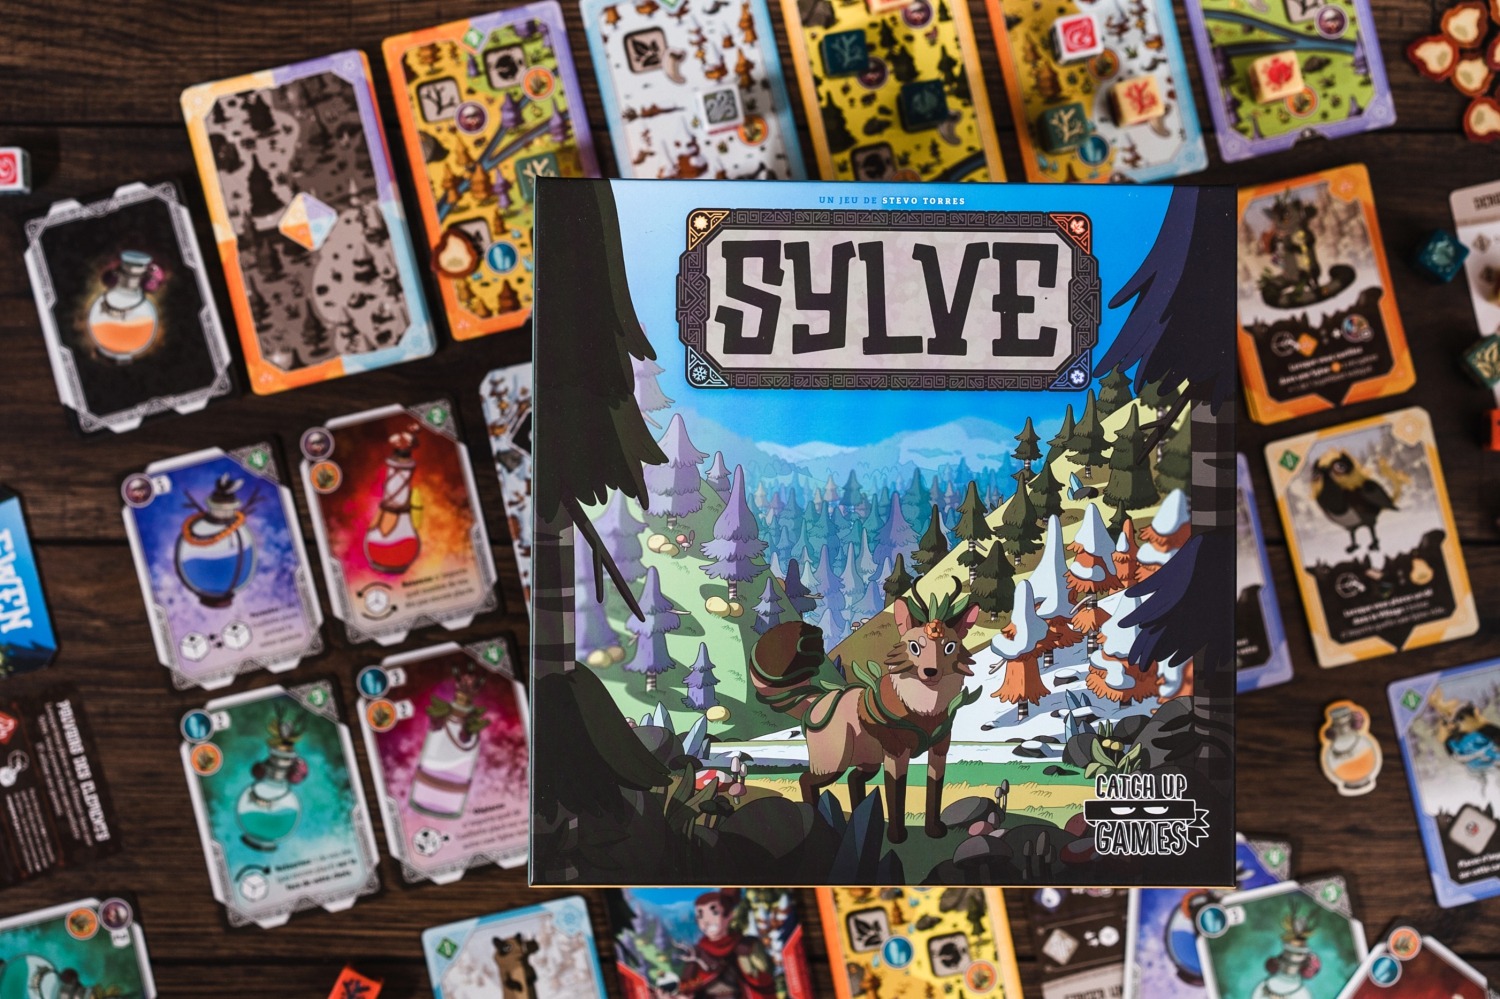 Sylve catch up games jeu de société brew boardgame